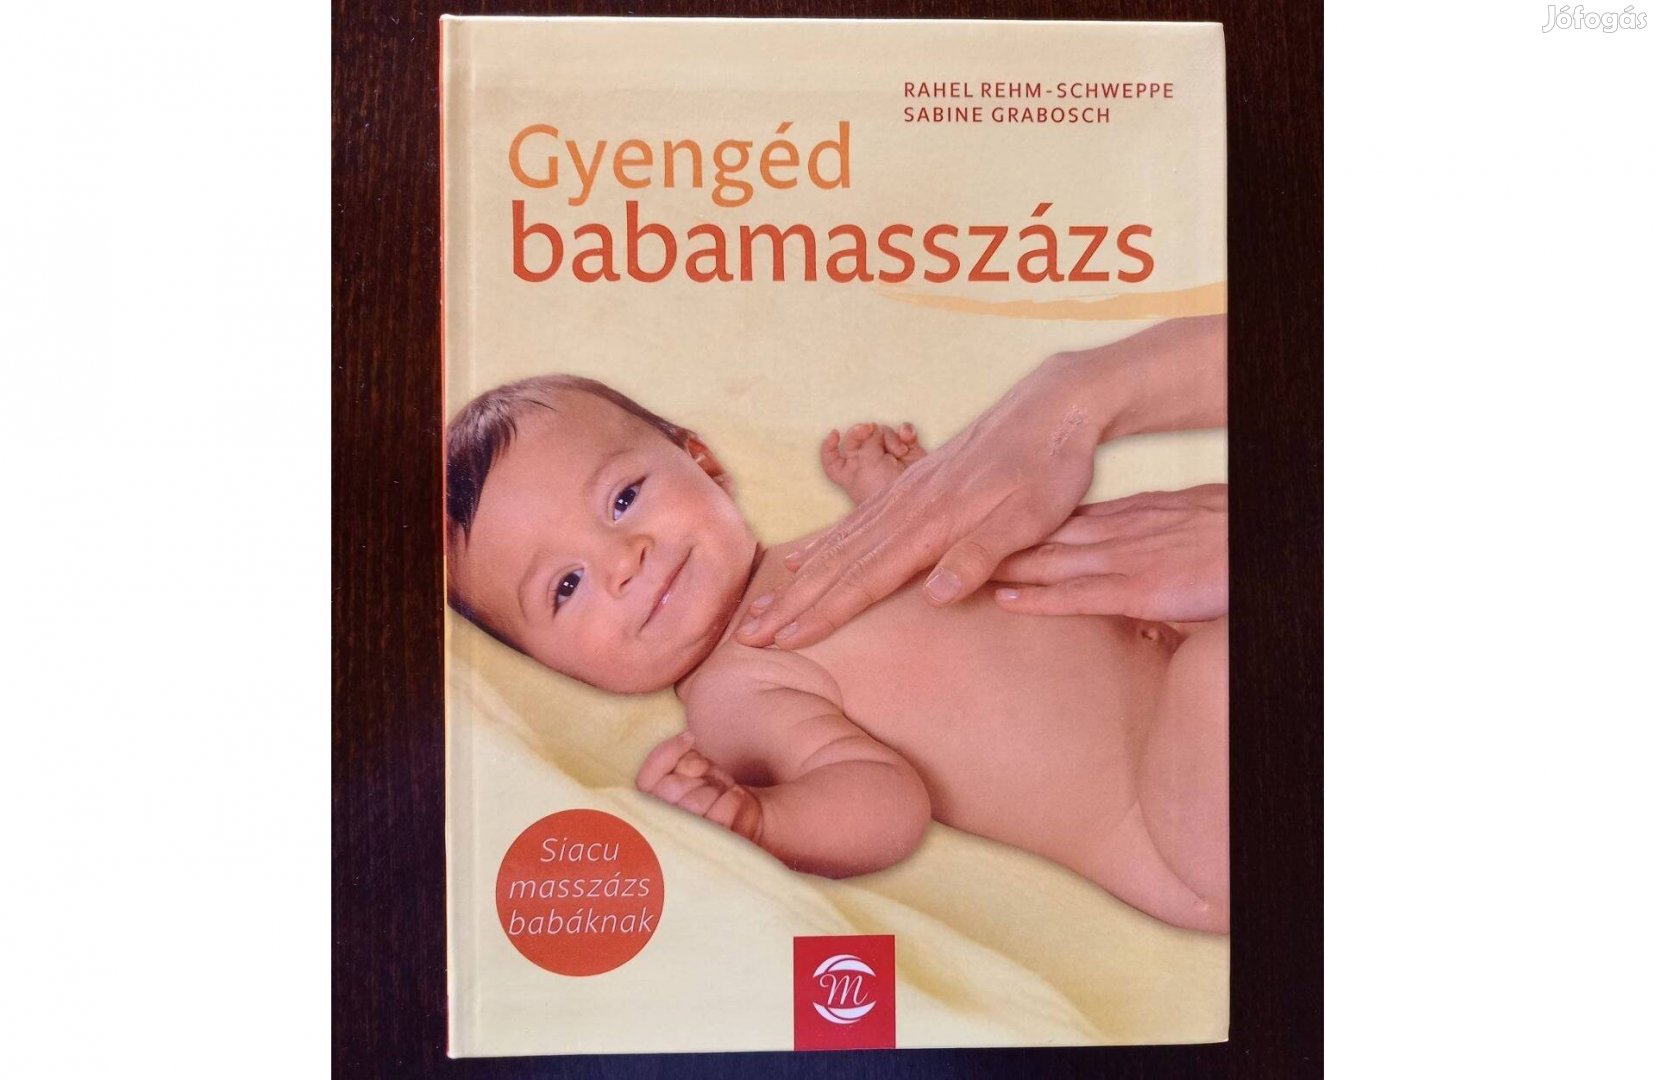 Gyengéd babamasszázs - Siacu masszázs babáknak